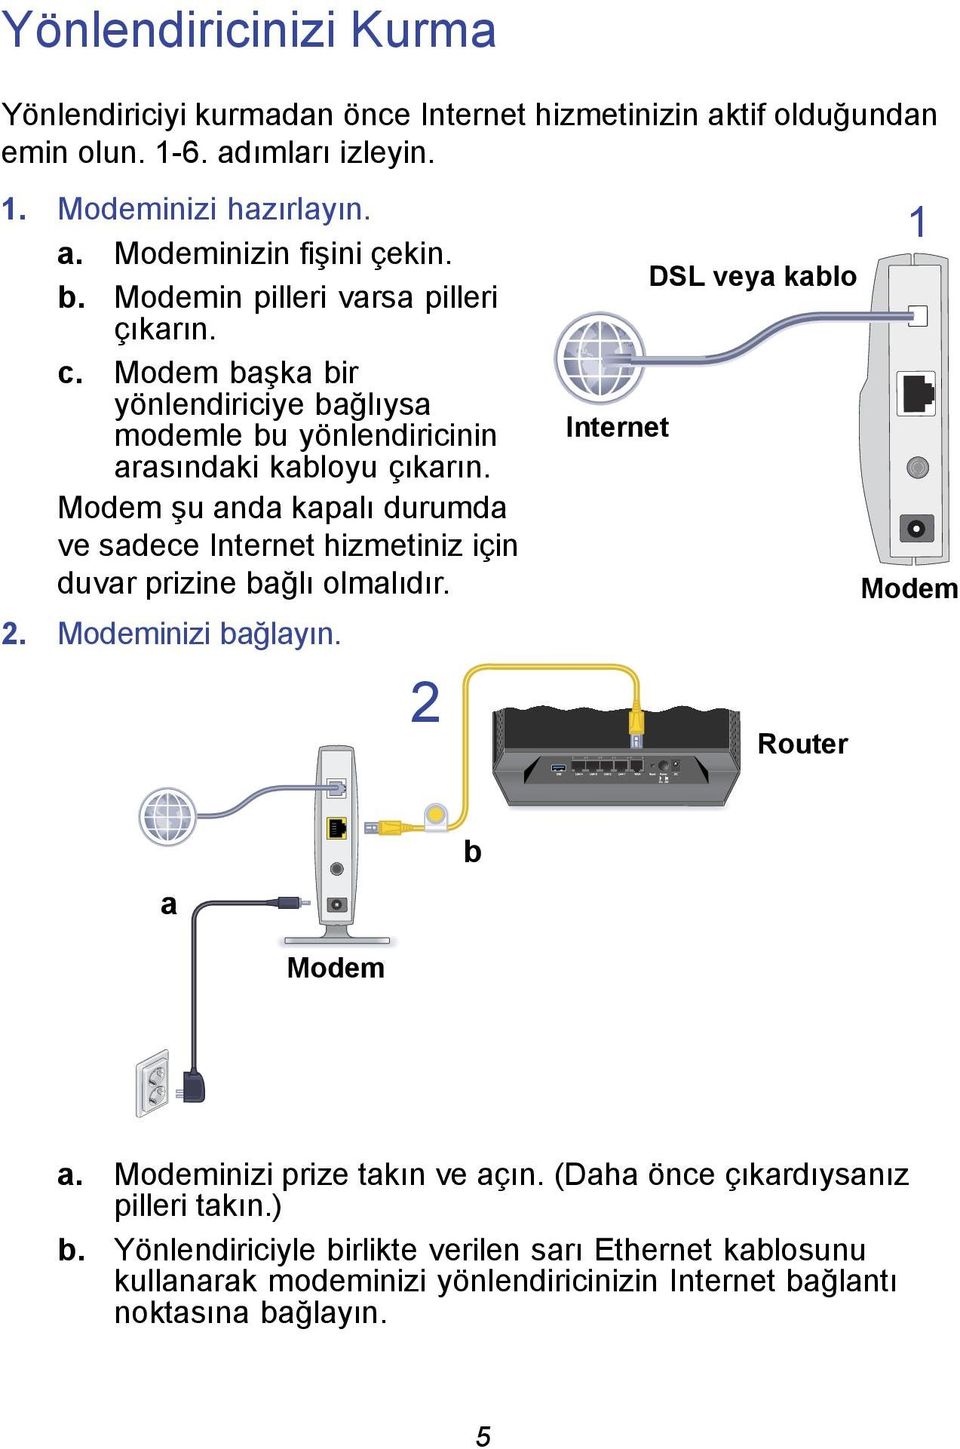 Modem şu anda kapalı durumda ve sadece Internet hizmetiniz için duvar prizine bağlı olmalıdır. 2. Modeminizi bağlayın. 2 Internet DSL veya kablo Router 1 Modem a b Modem a.